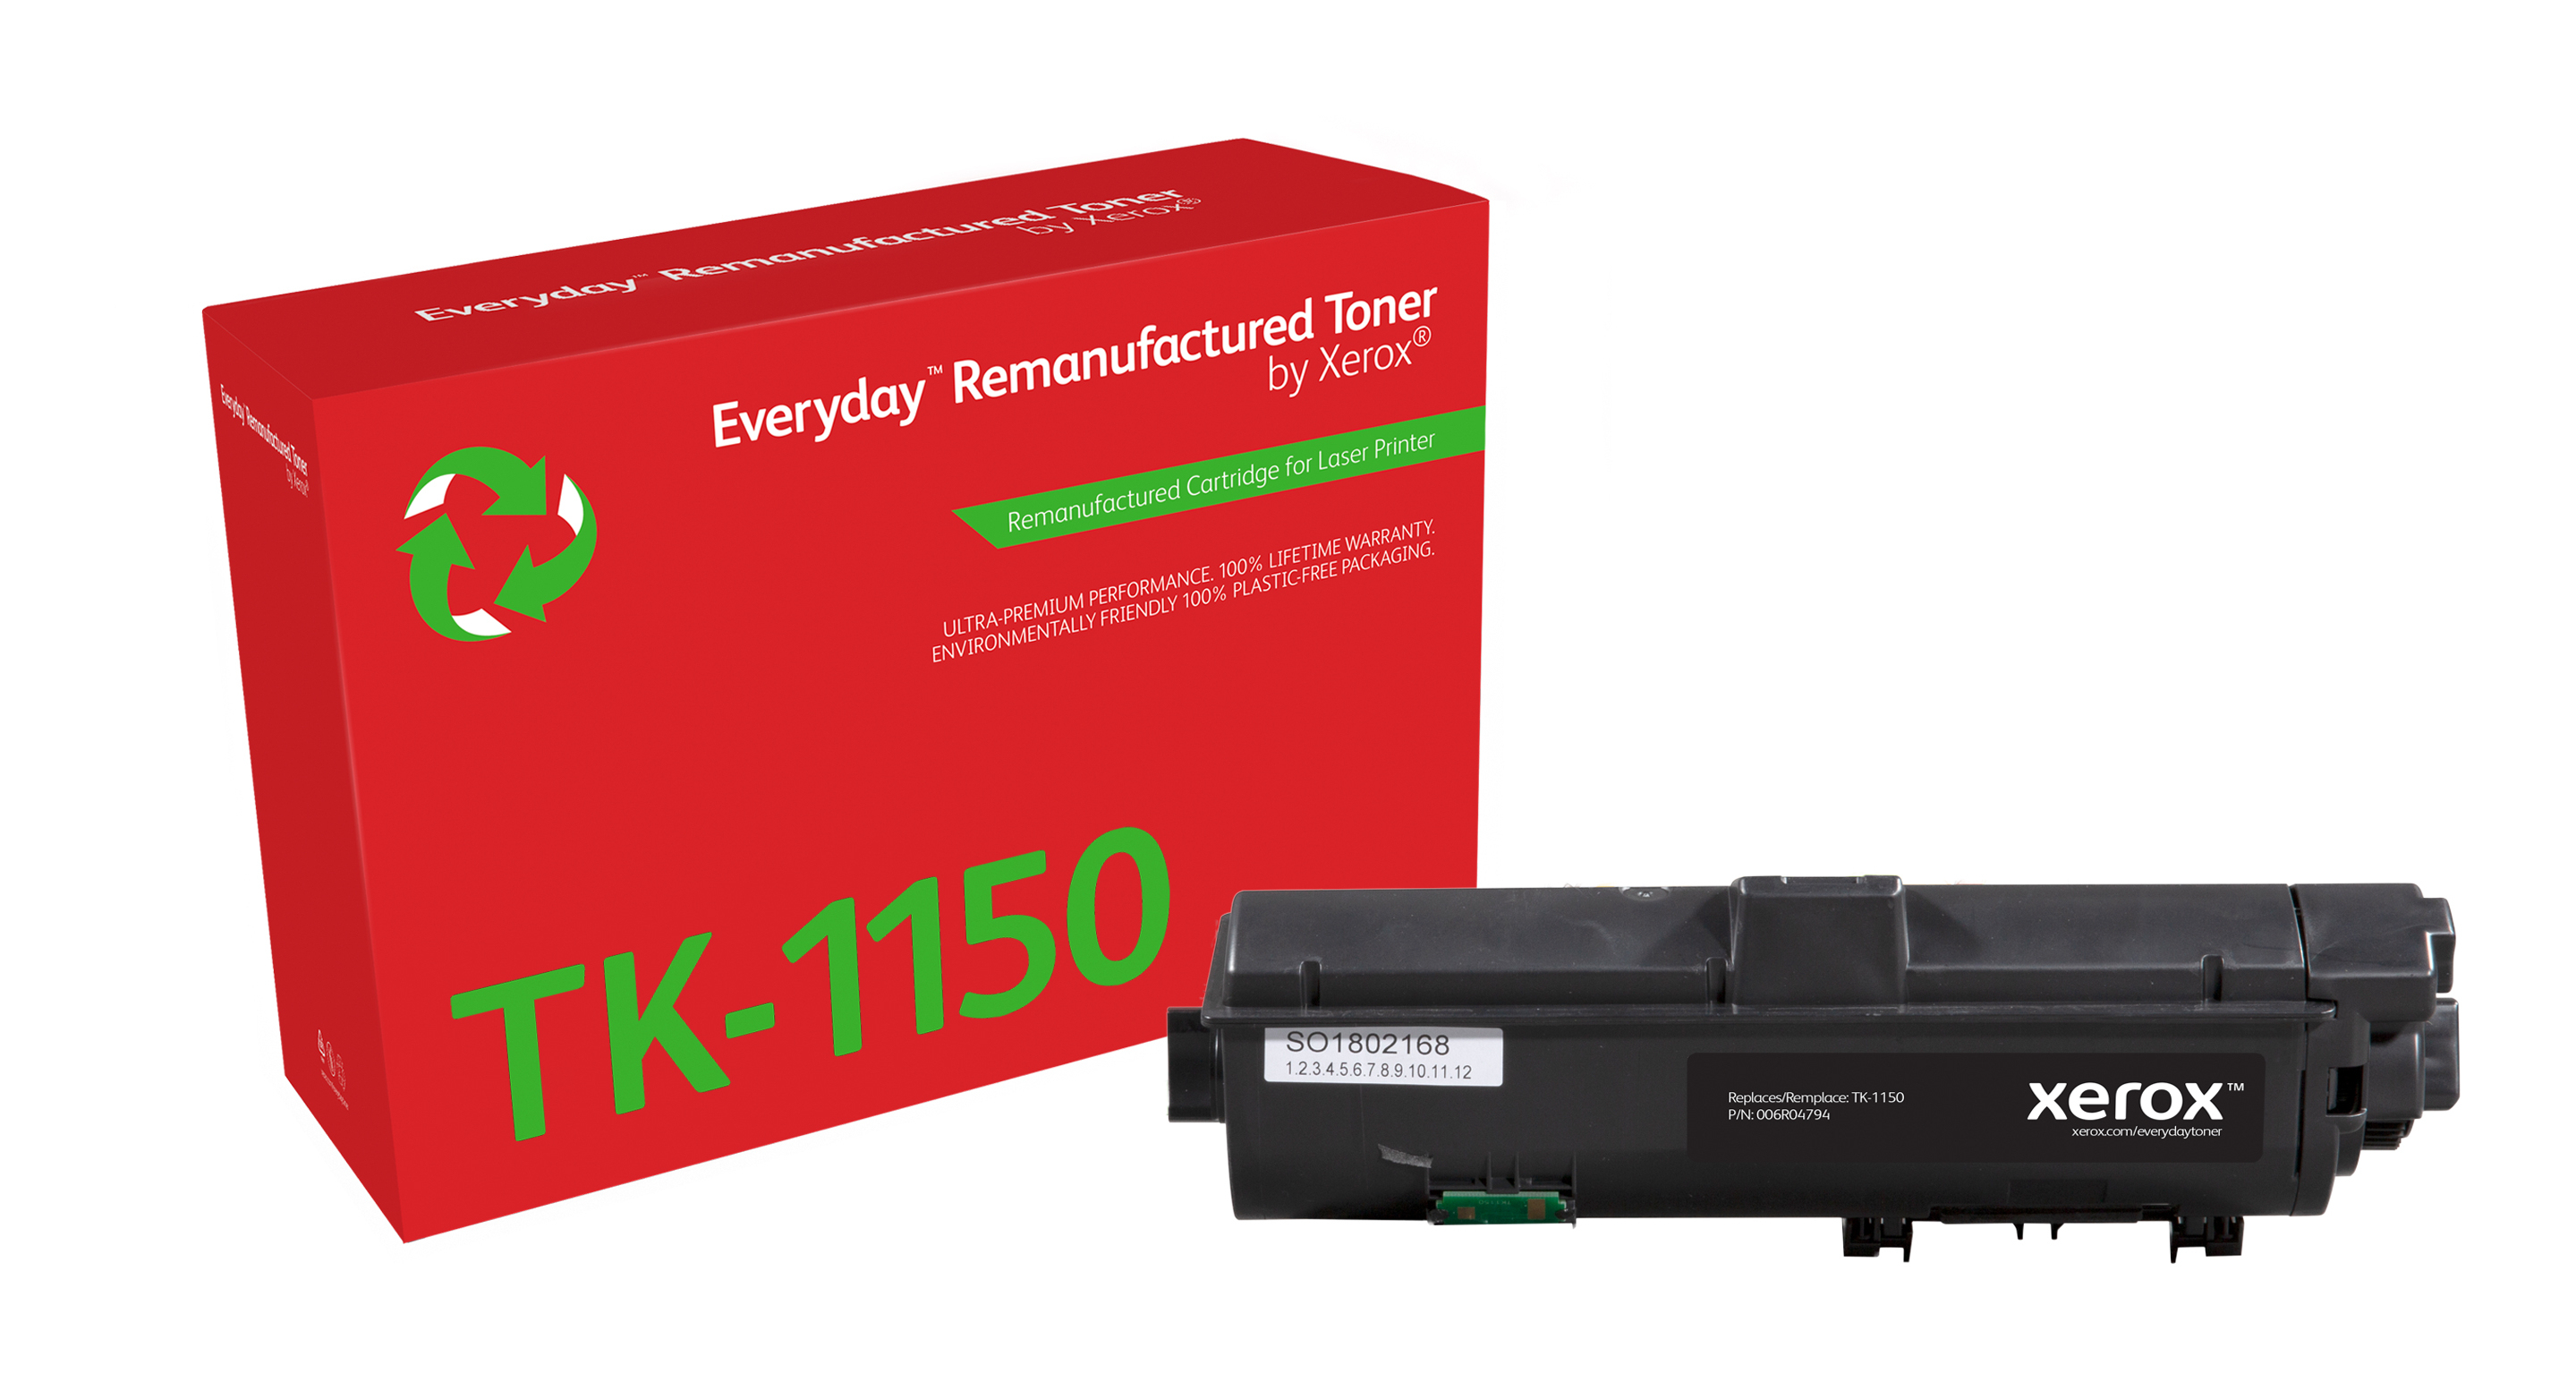 Remanufacturado Everyday Tner Everyday Negro remanufacturado de Xerox es compatible con Kyocera TK-1150, Capacidad estndar